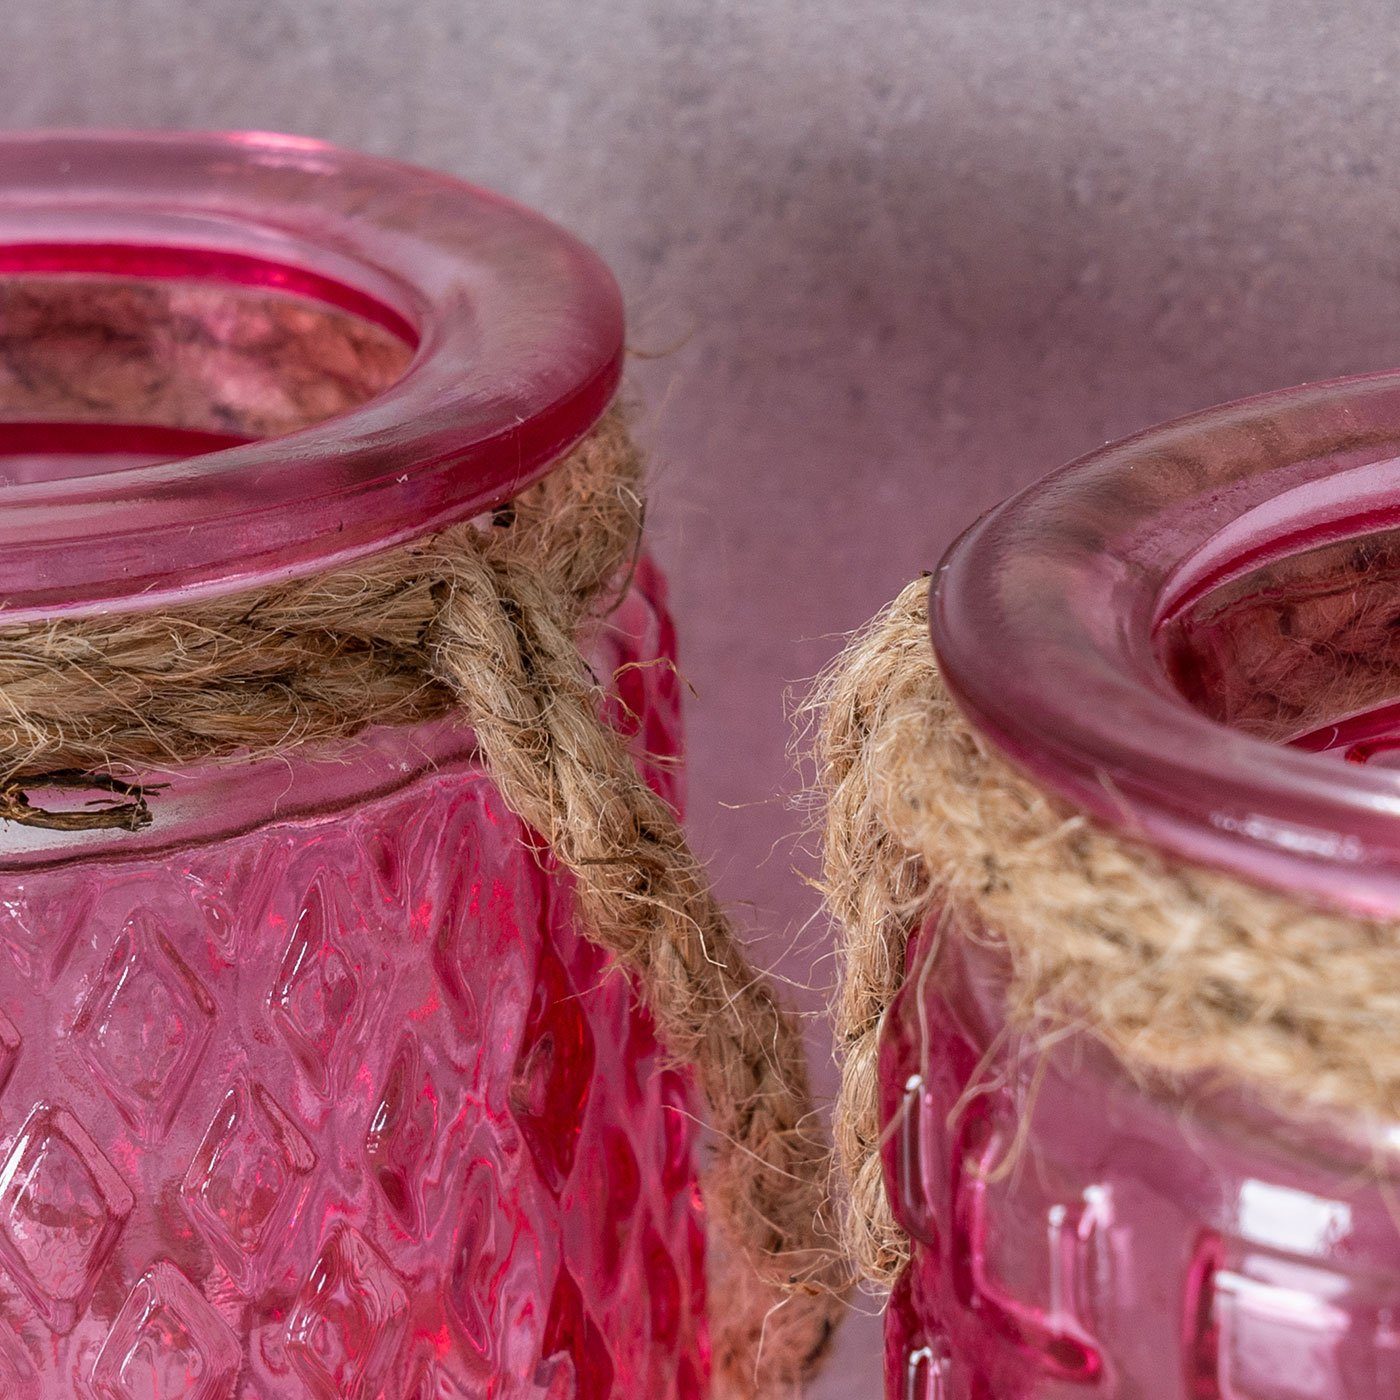 Levandeo® H10cm Teelichthalter 4er Set Pink Tischdeko Teelichthalter, Rosa Glas Windlicht